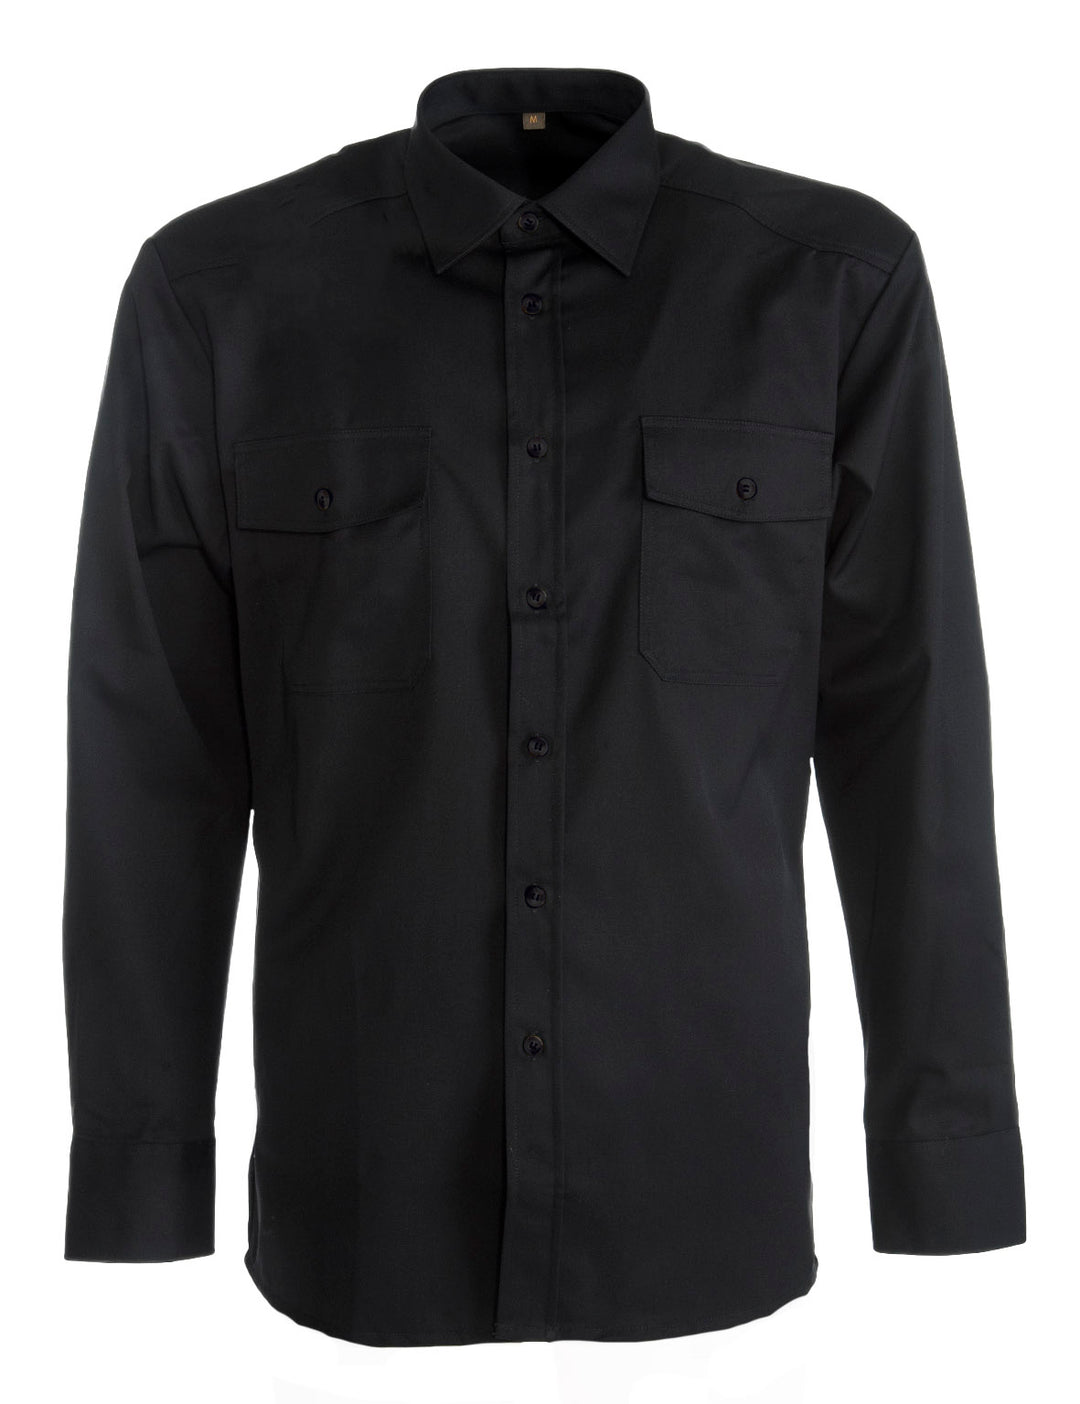 Musta pitkähihainen twill-paita rintataskuilla. Unisex malli miehille ja naisille. Helppohoitoinen ja miellyttävän tuntuinen materiaali. Klassinen malli. 